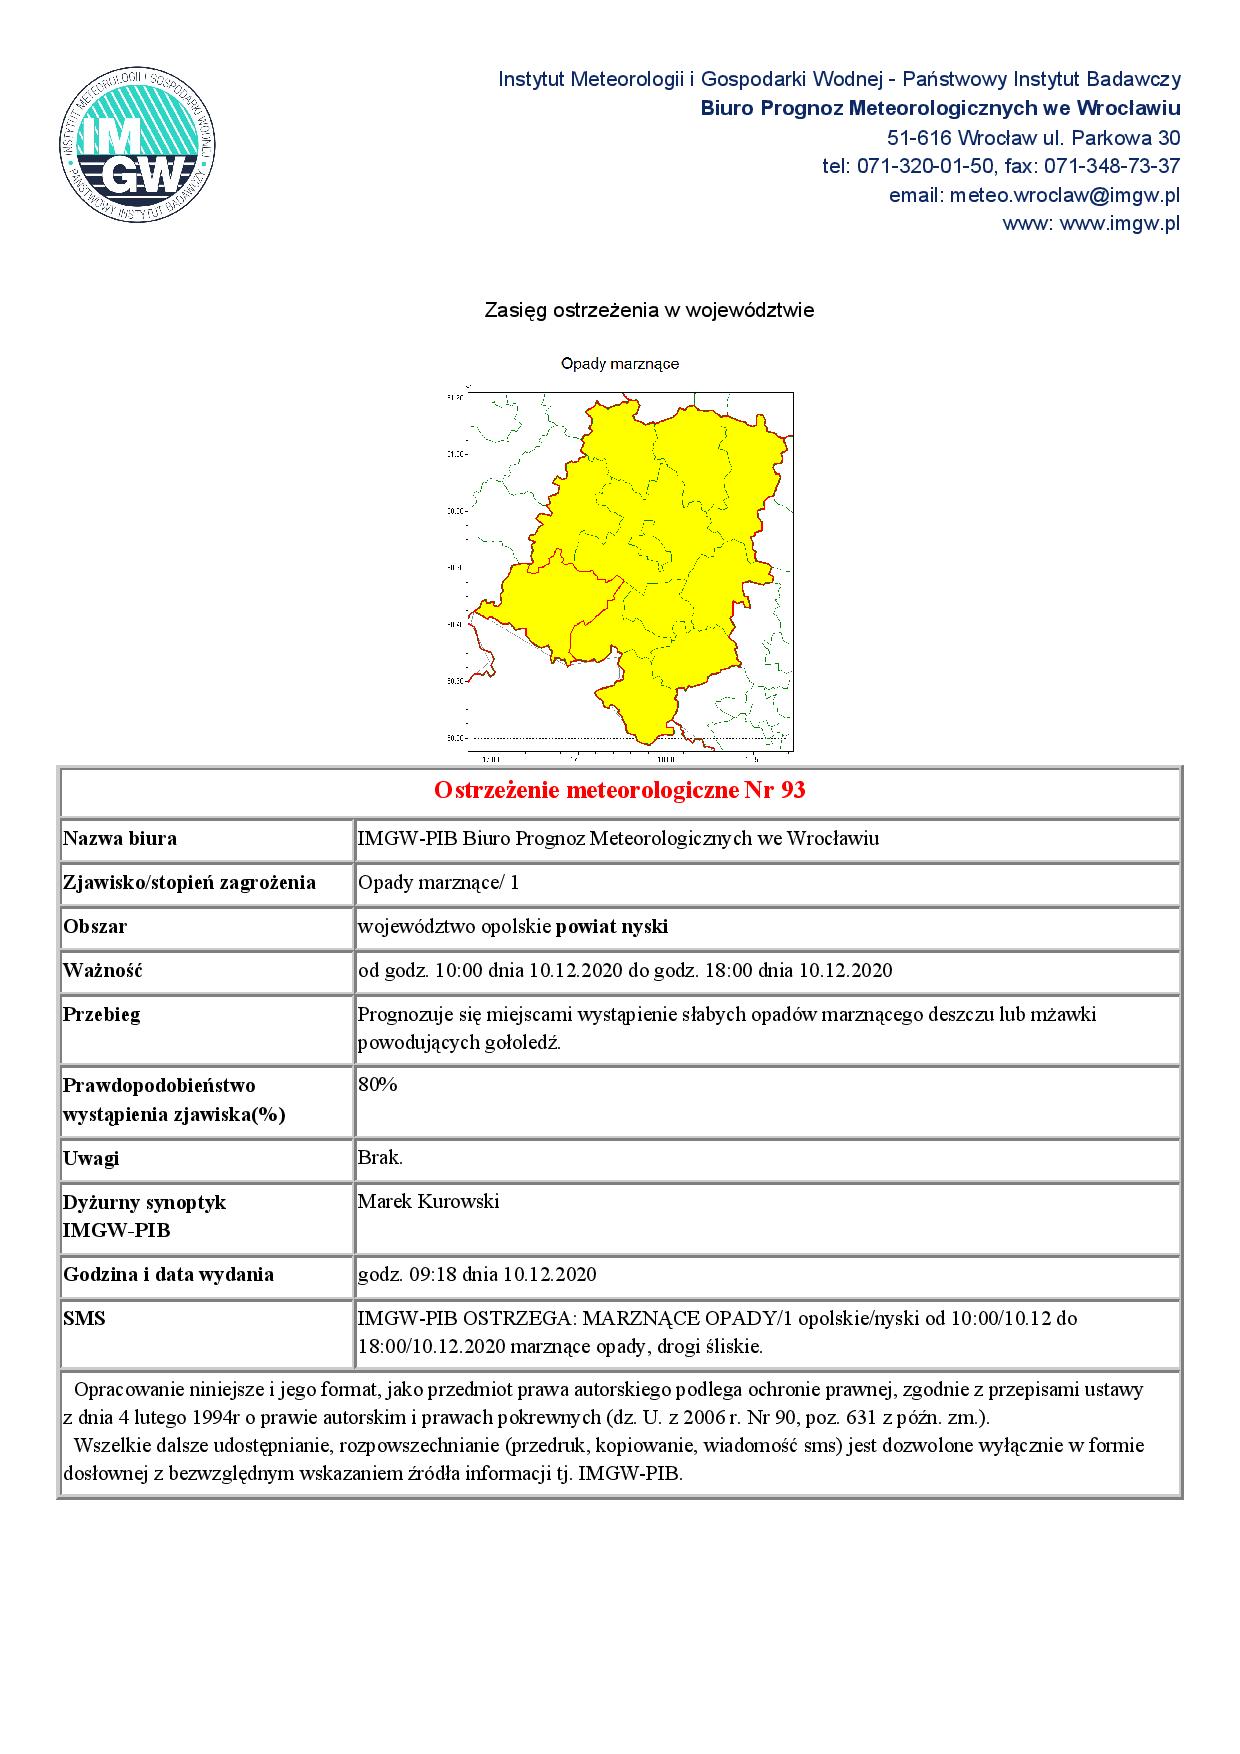 IMGW wydało ostrzeżenie pierwszego stopnia dla naszego województwa dotyczące możliwości wystąpienia zjawiska opadów marznących obowiązujące w dniu dzisiejszym w godzinach od 10.00 do 18.00.